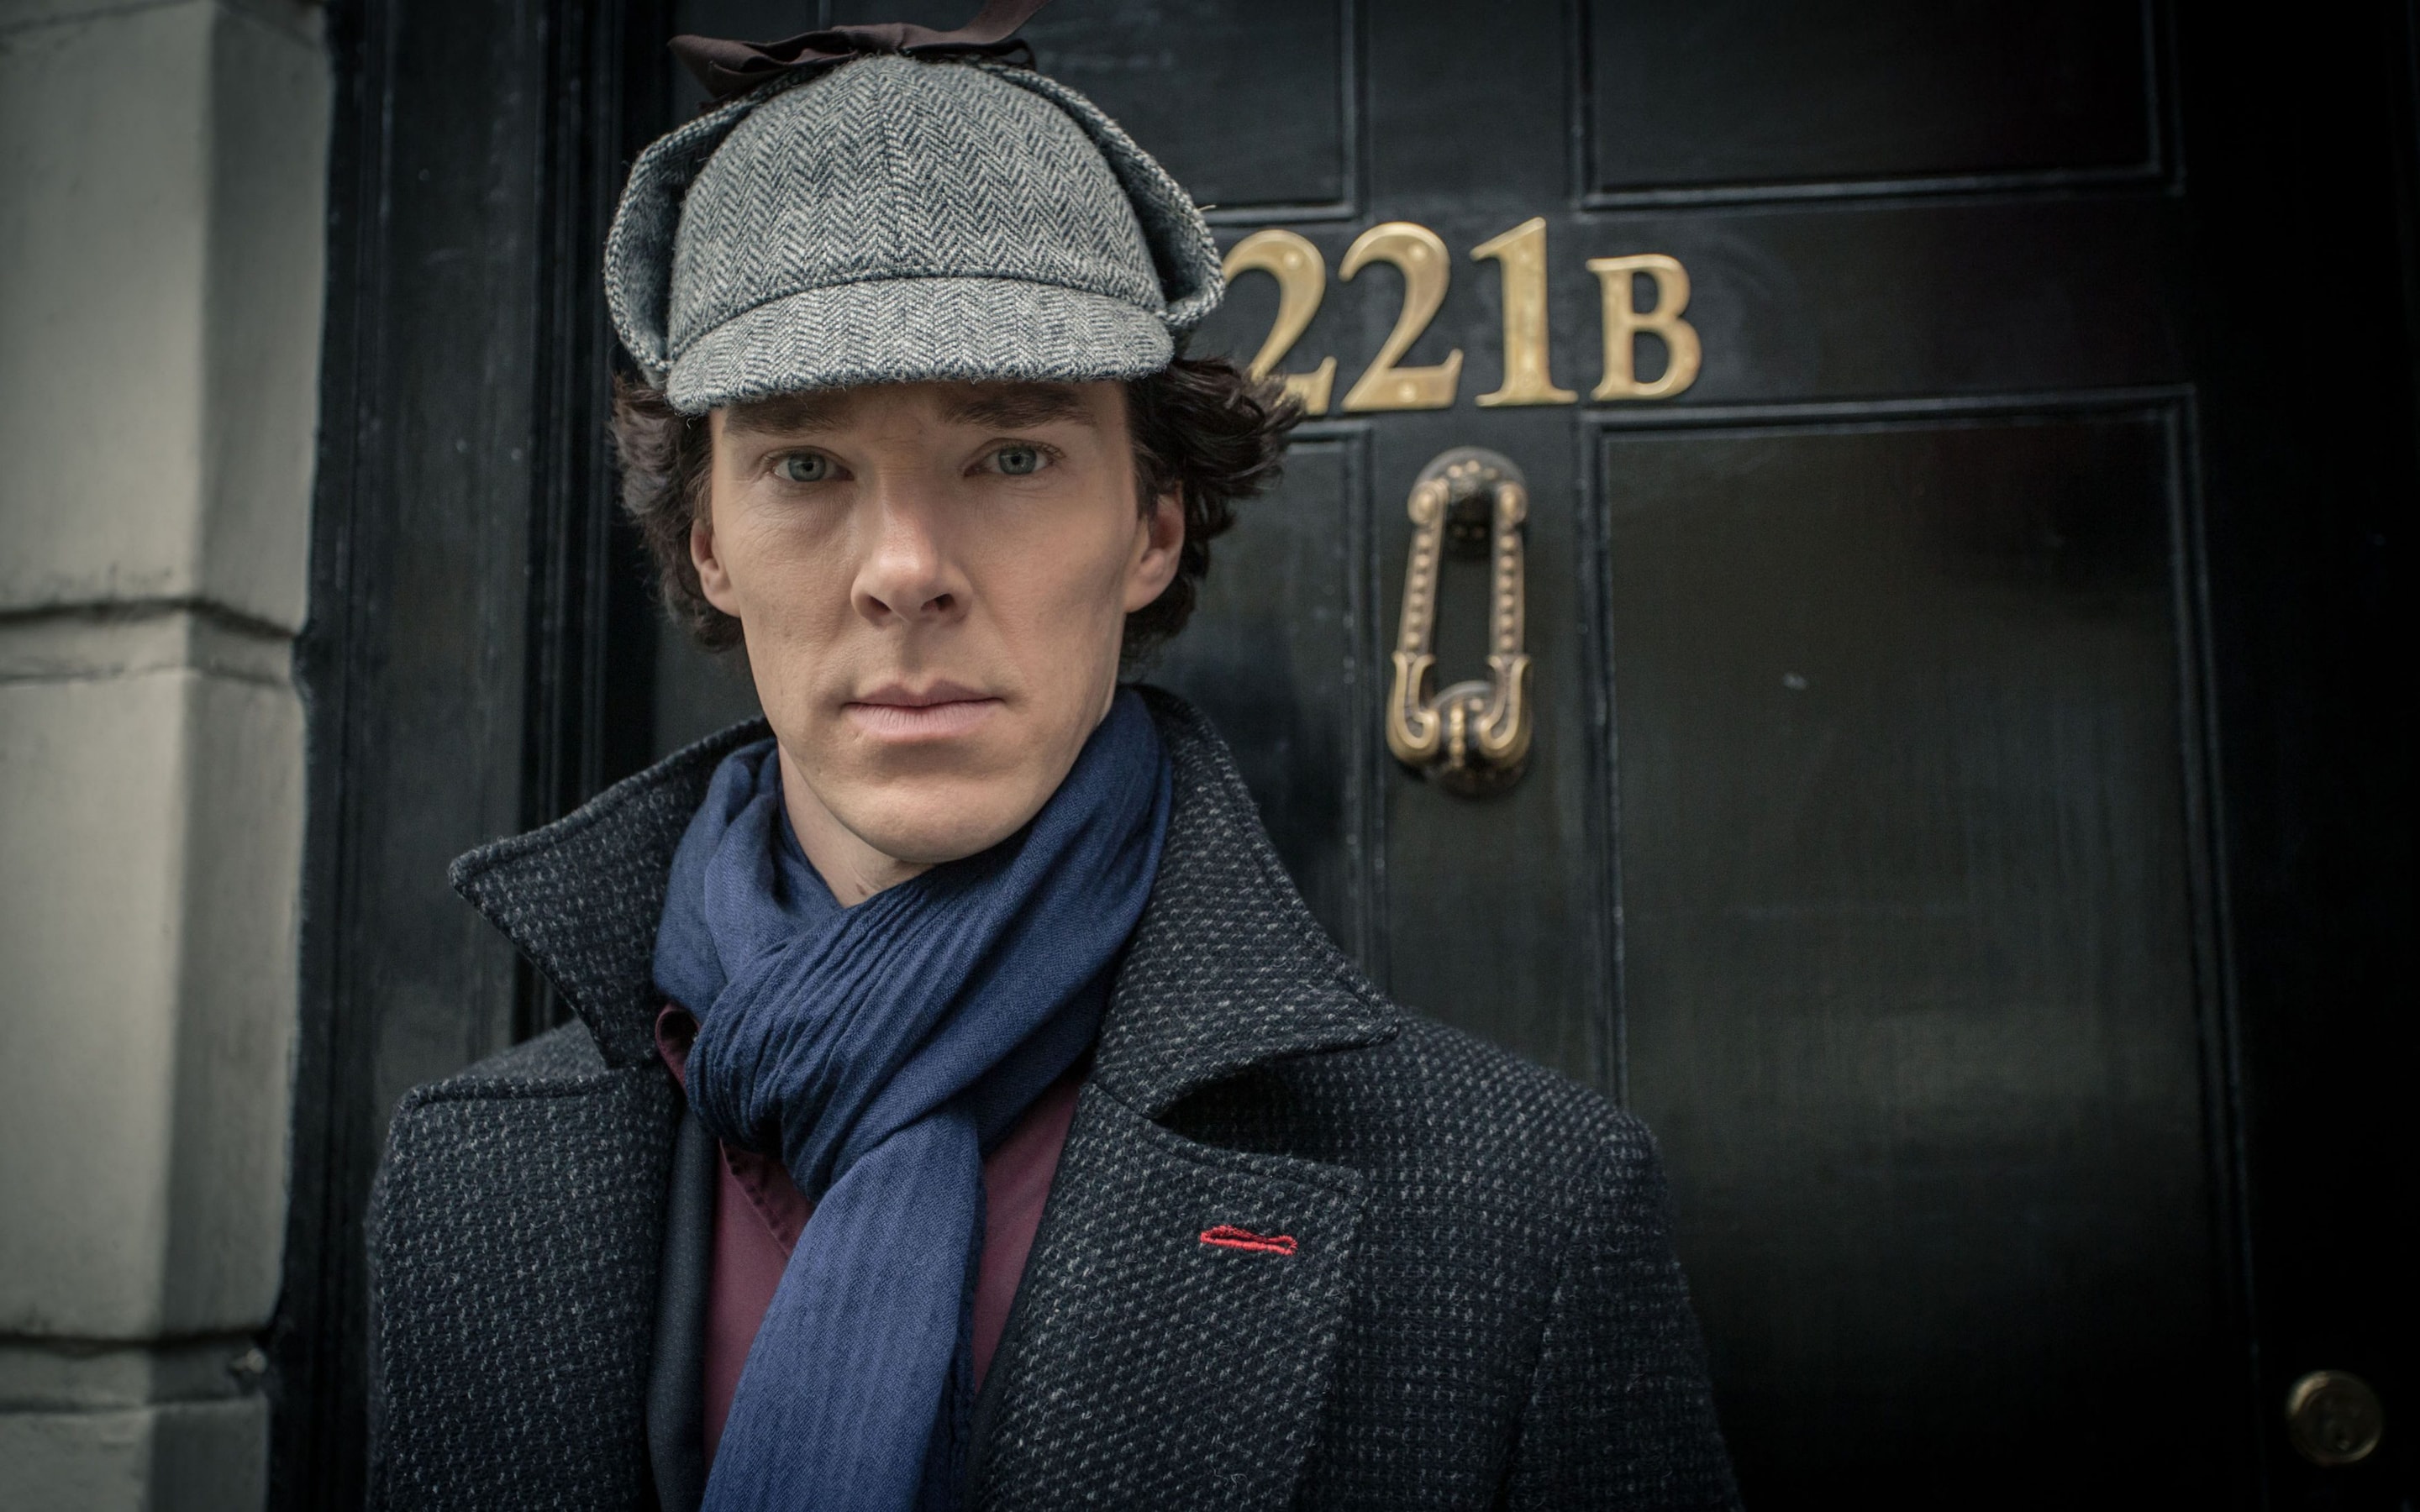 Siapa aktor pemeran Sherlock Holmes paling keren?